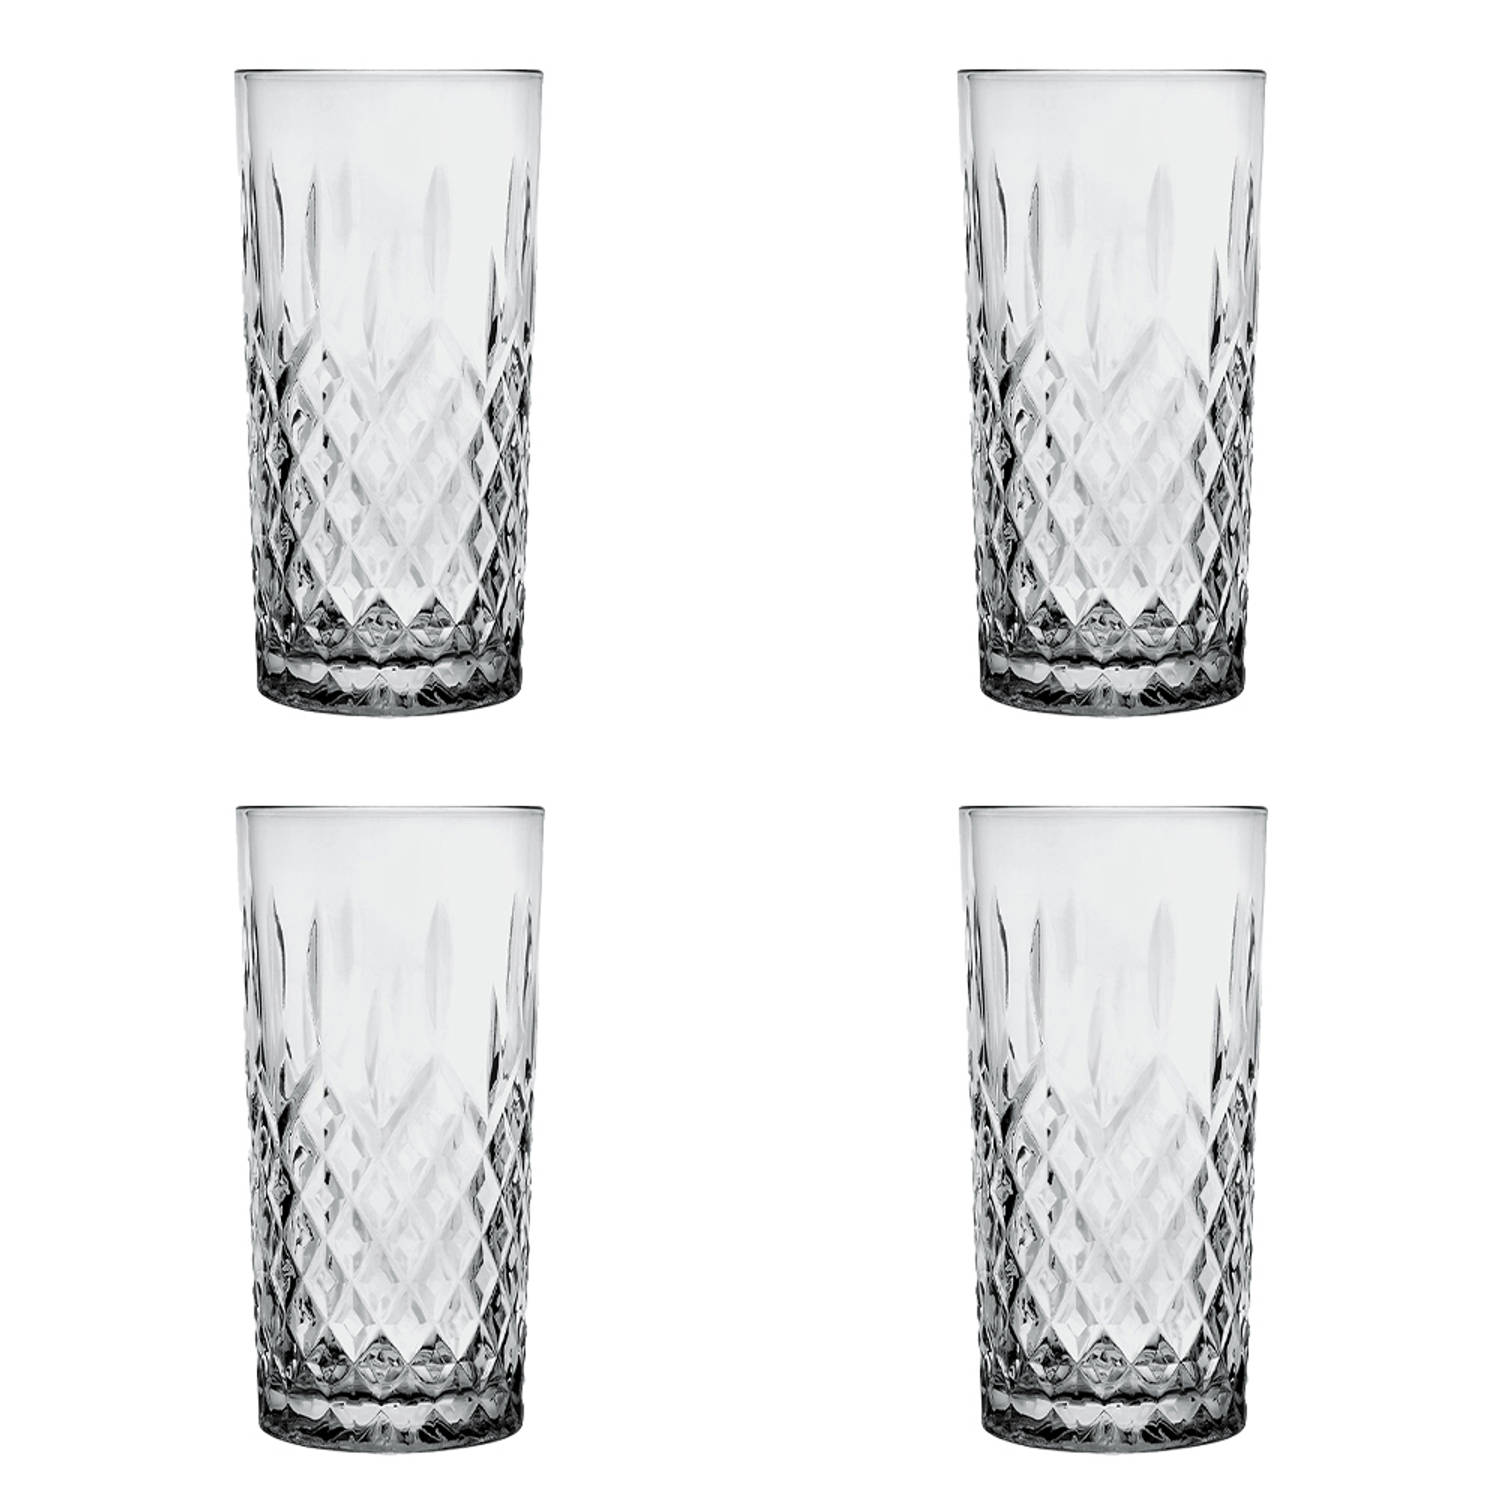 HAES DECO - Waterglas, Drinkglas set van 4 glazen - inhoud glas 300 ml - formaat glas Ø 7x15 cm - Waterglazen, Drinkglazen